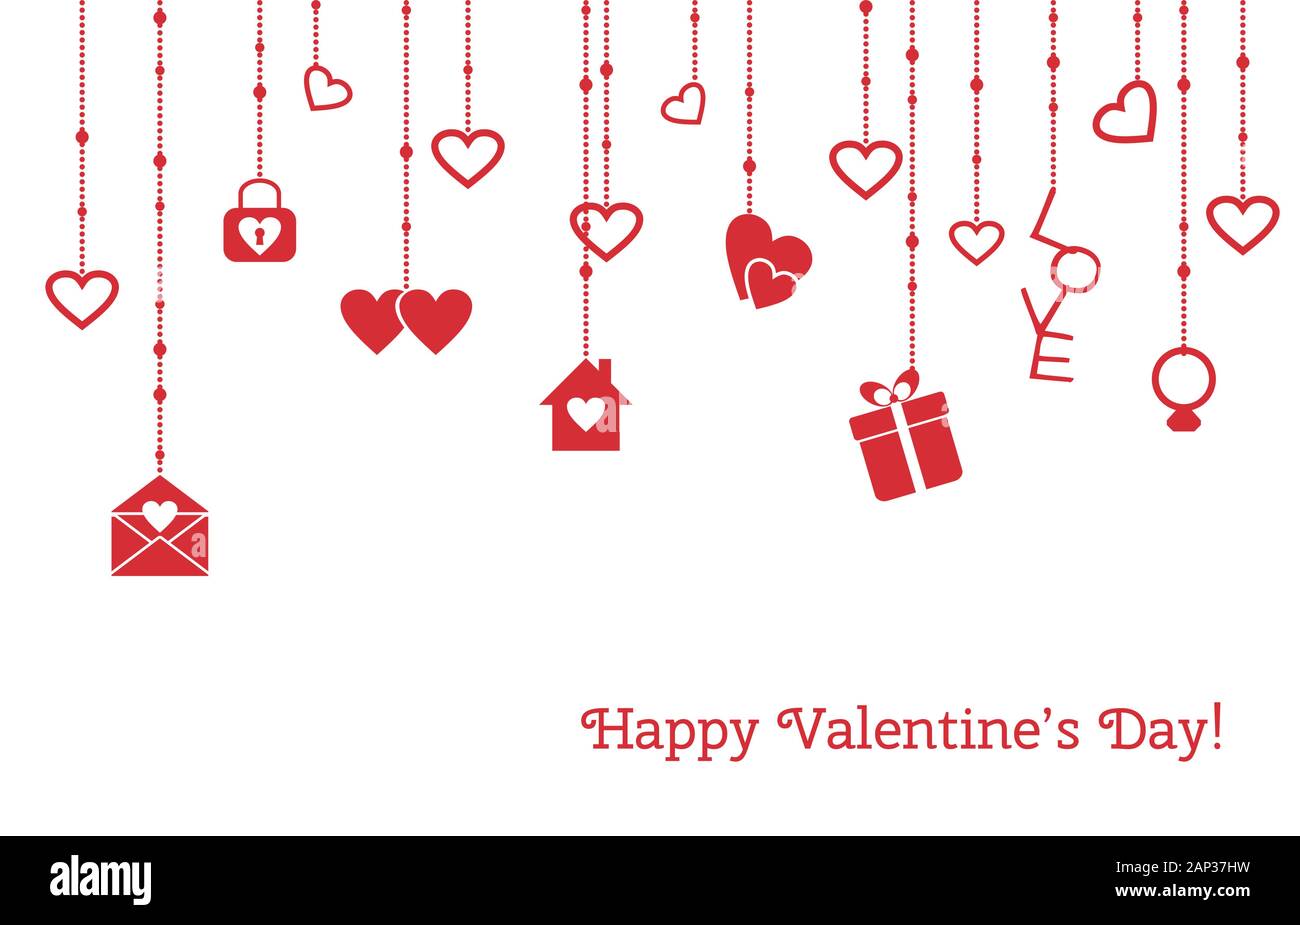 Grußkarte für Valentines Tag mit hängenden Herzen, Geschenke Stock Vektor